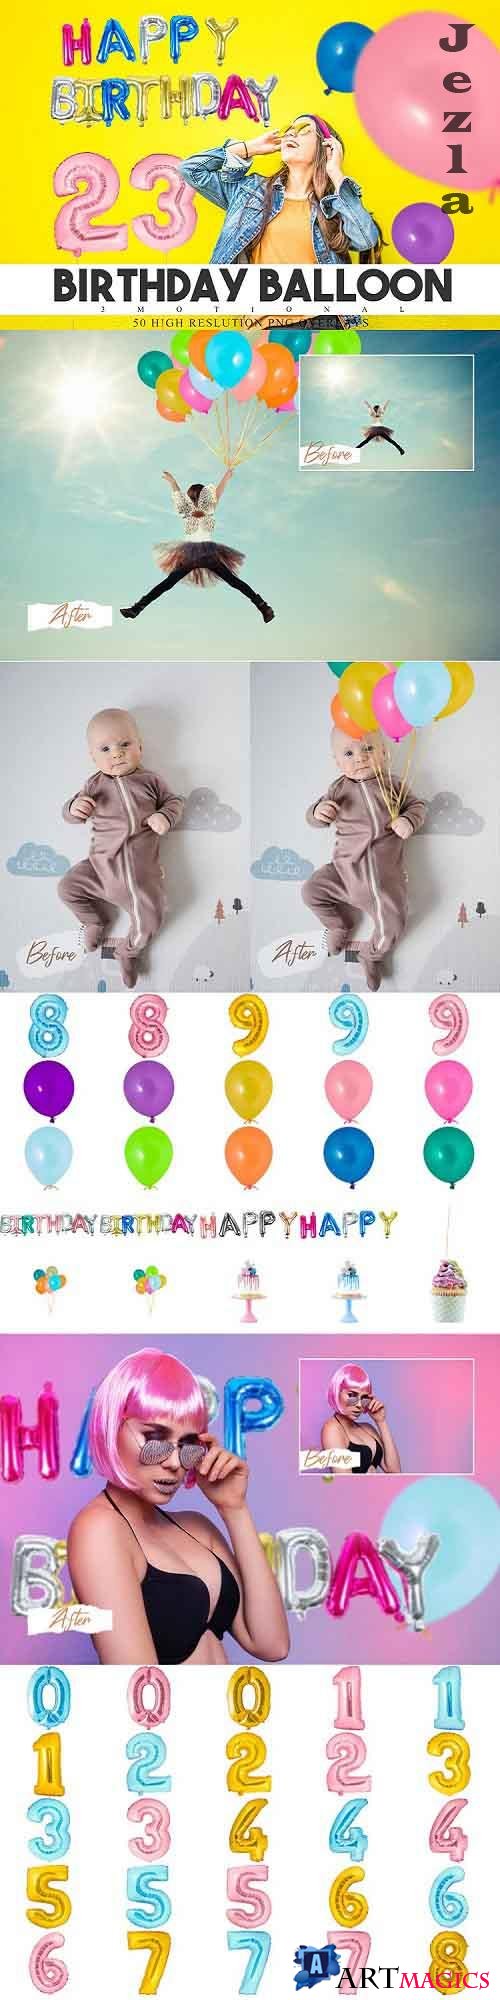 50 Birthday Balloon Overlays - 604249